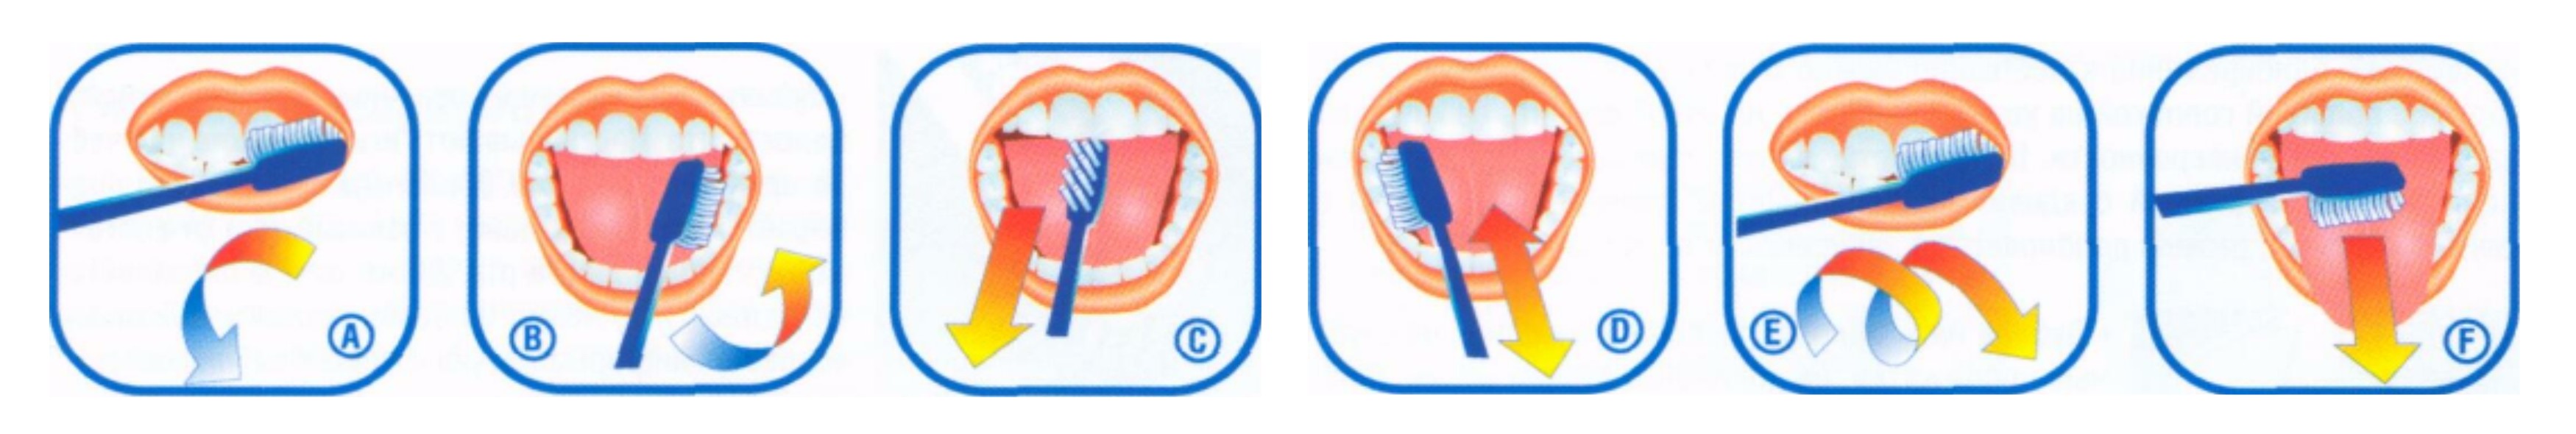 Можно чистить зубы в уразу. Схема правильной чистки зубов. Схема чистки зубов для детей. Схема чистки зубов для дошкольников. Схема как правильно чистить зубы.